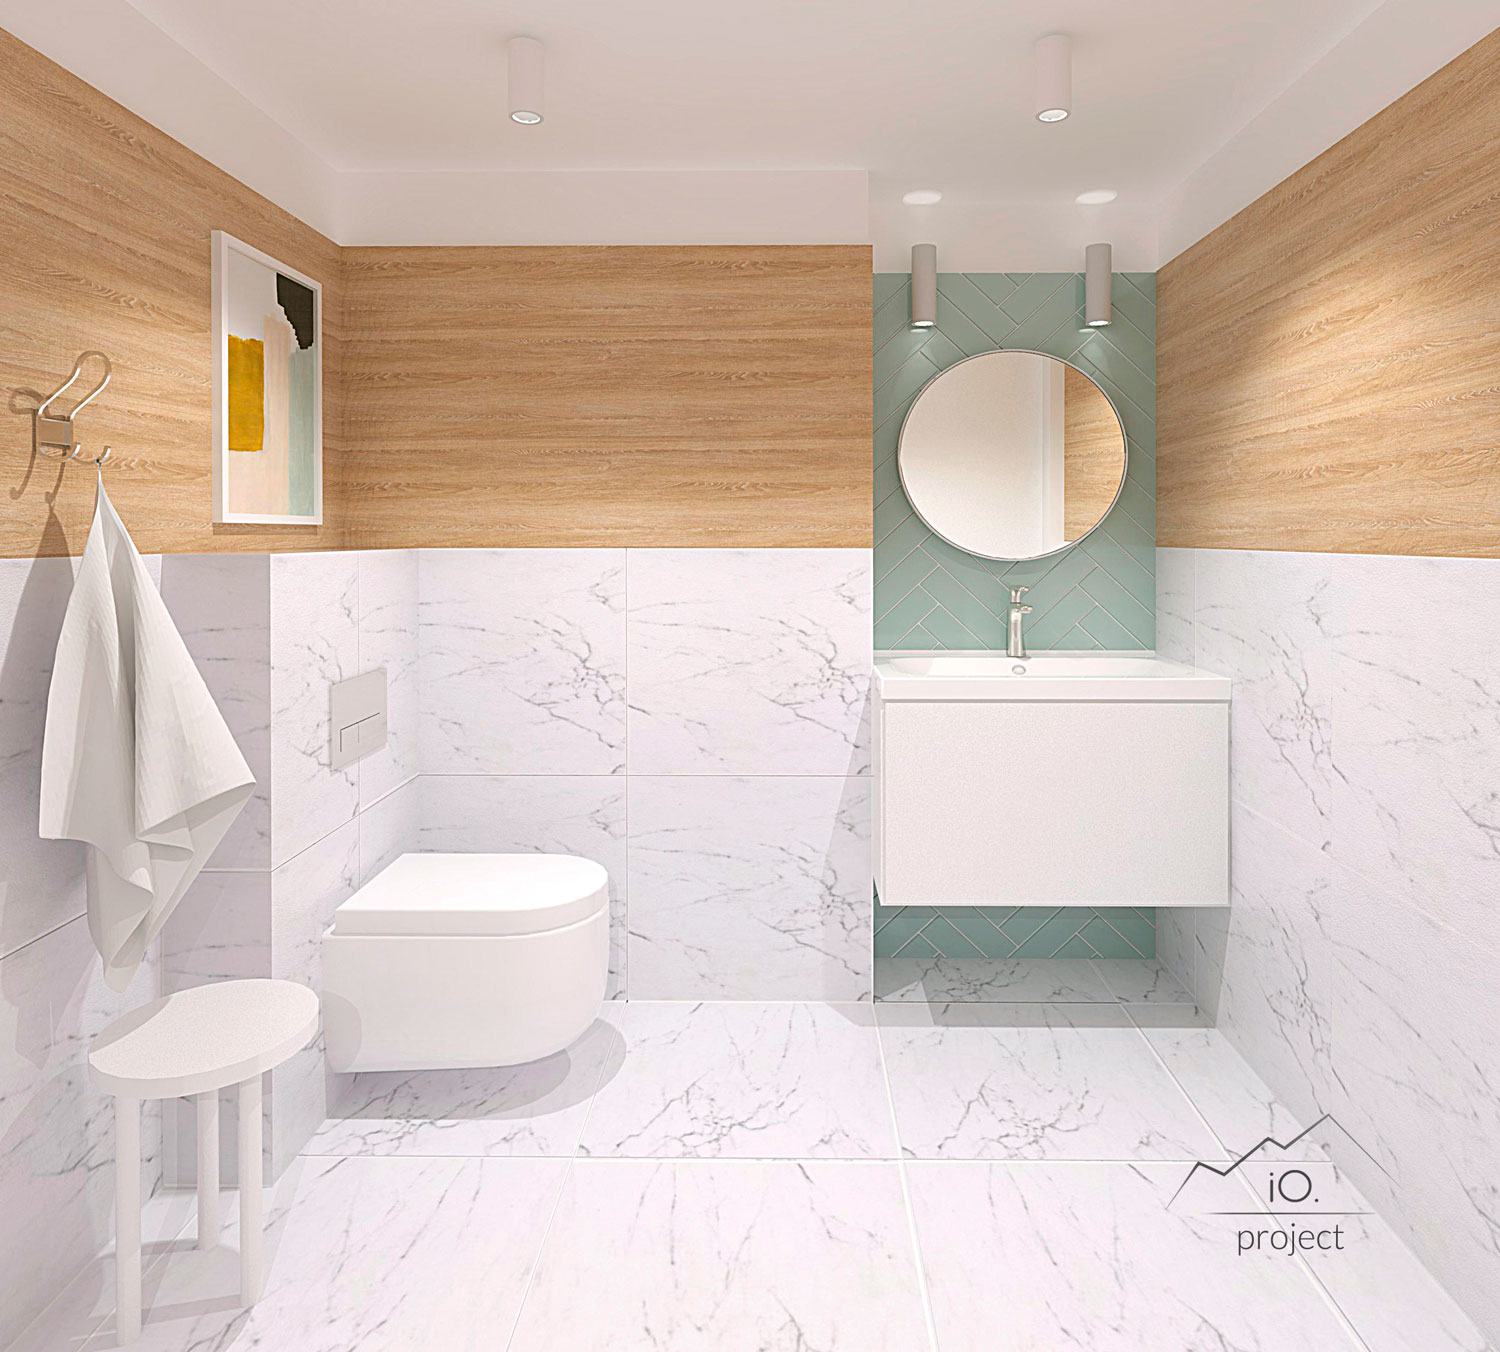 Wizualizacja łazienki. Połączenie ciepłej okładziny z drewnianych płyt fornirowanych, marmuru, dekoracyjnych płytek w odcieniach pastelowej zielenie białej armatury. 